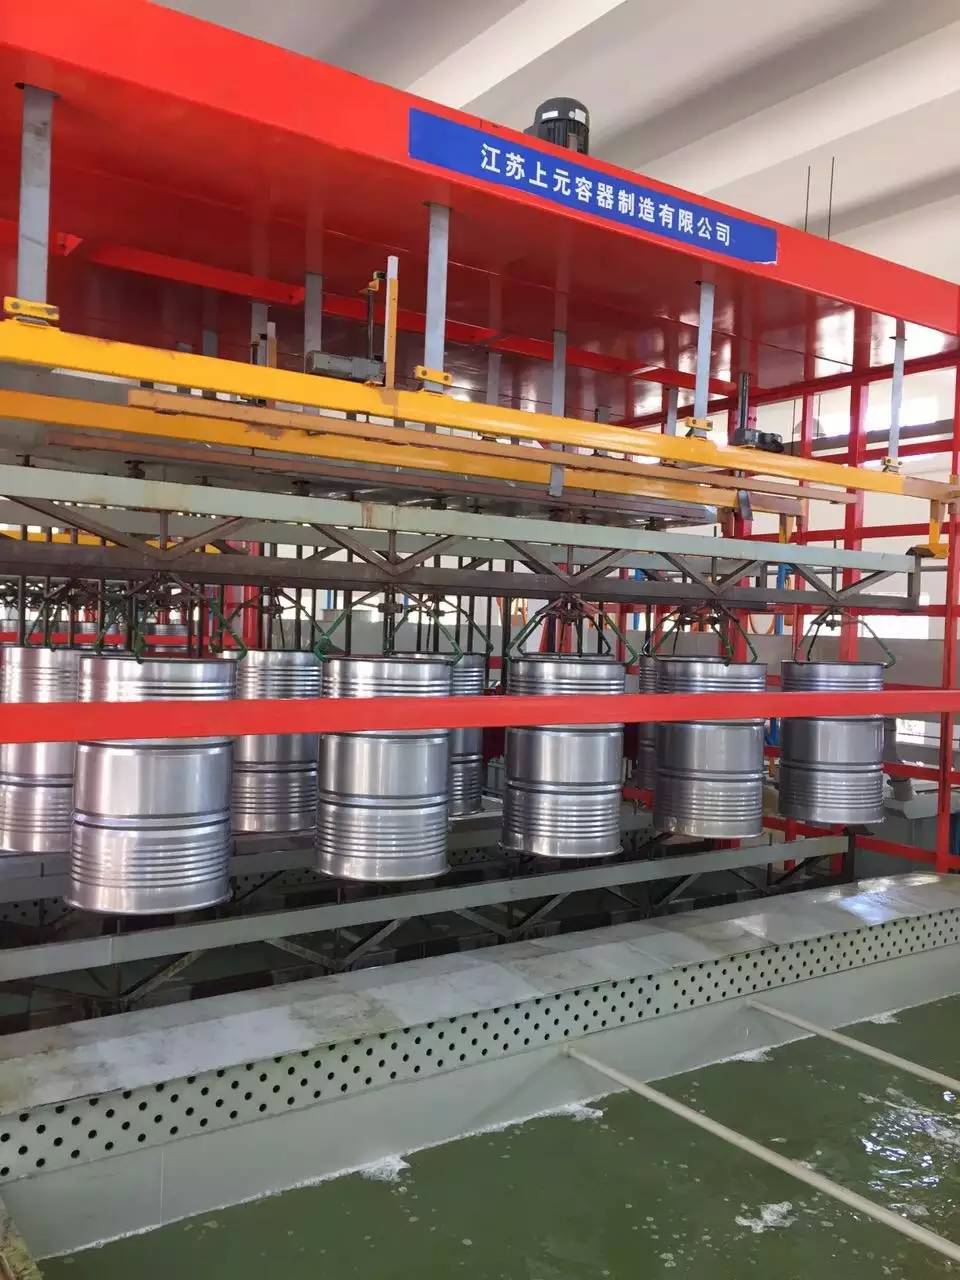 江苏上元容器制造有限公司镀锌桶全自动化生产线投入生产